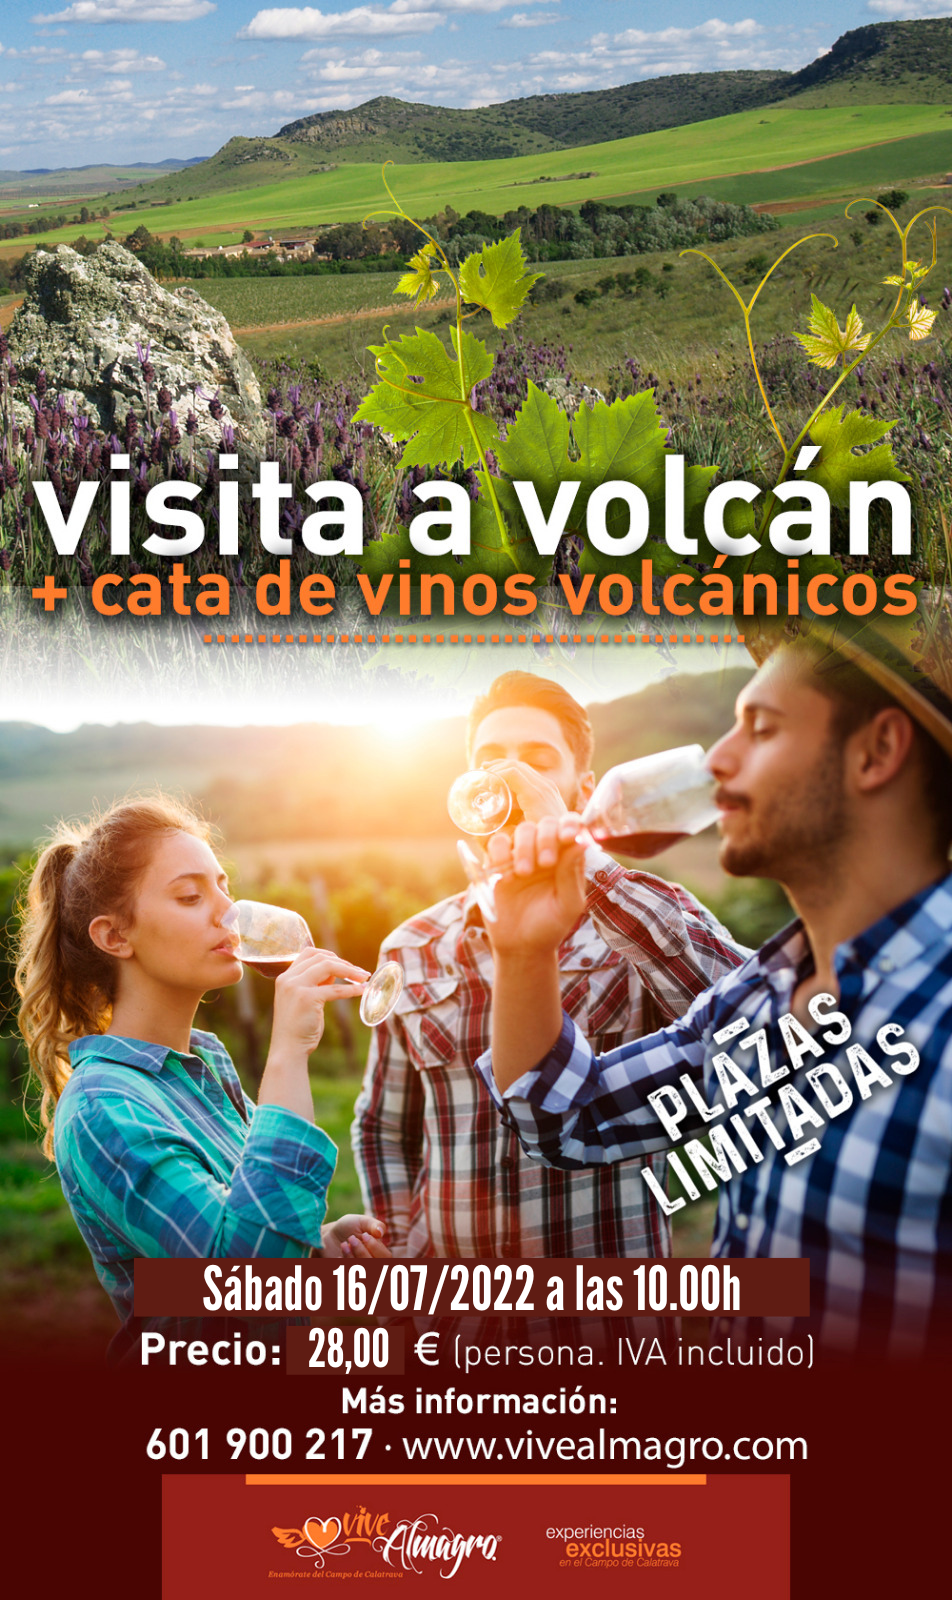 visita a volcan y cata de vinos volcanicos en Almagro (Ciudad Real)